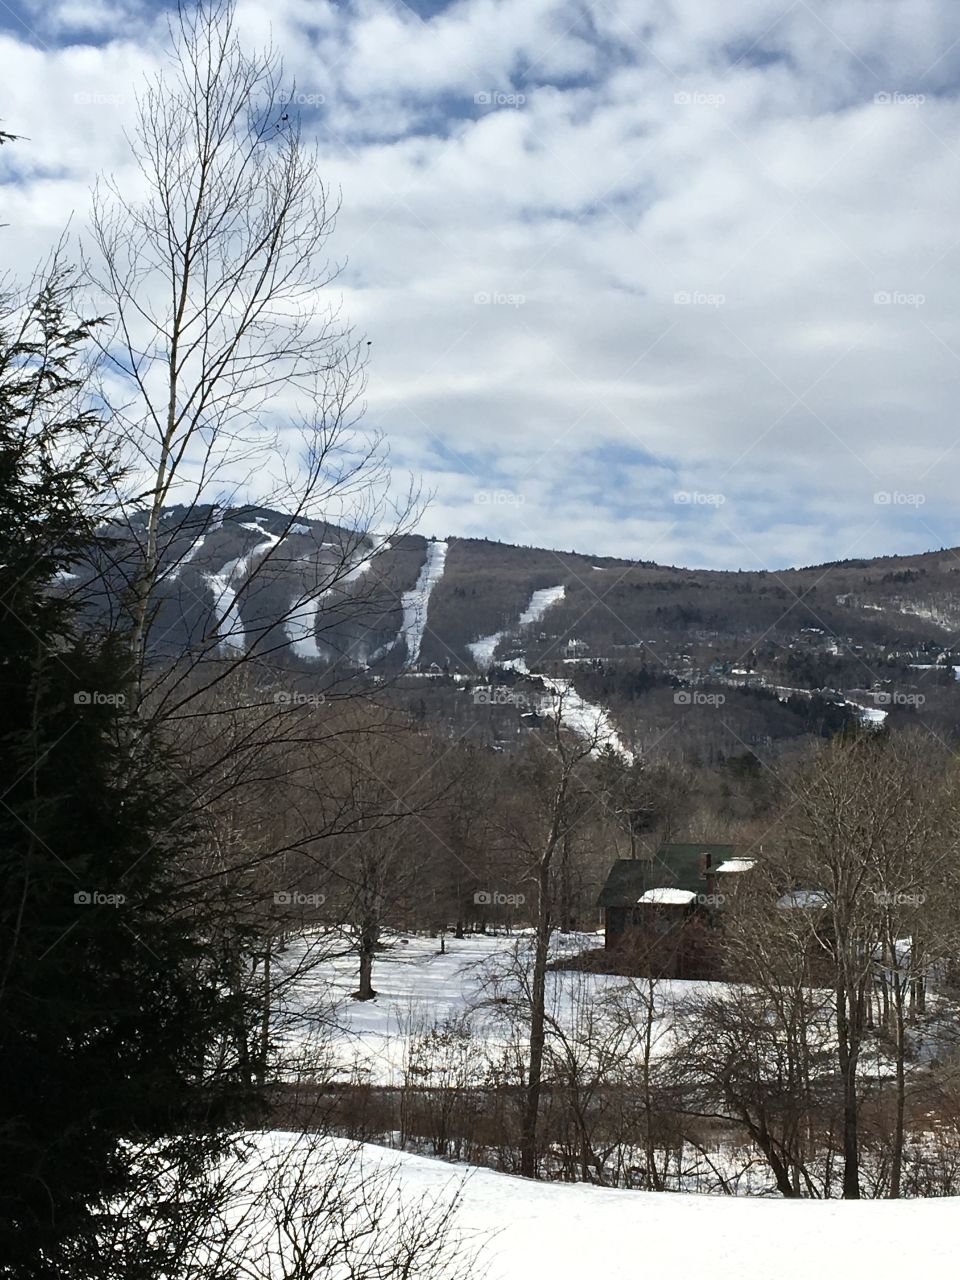 Winter in Vermont!